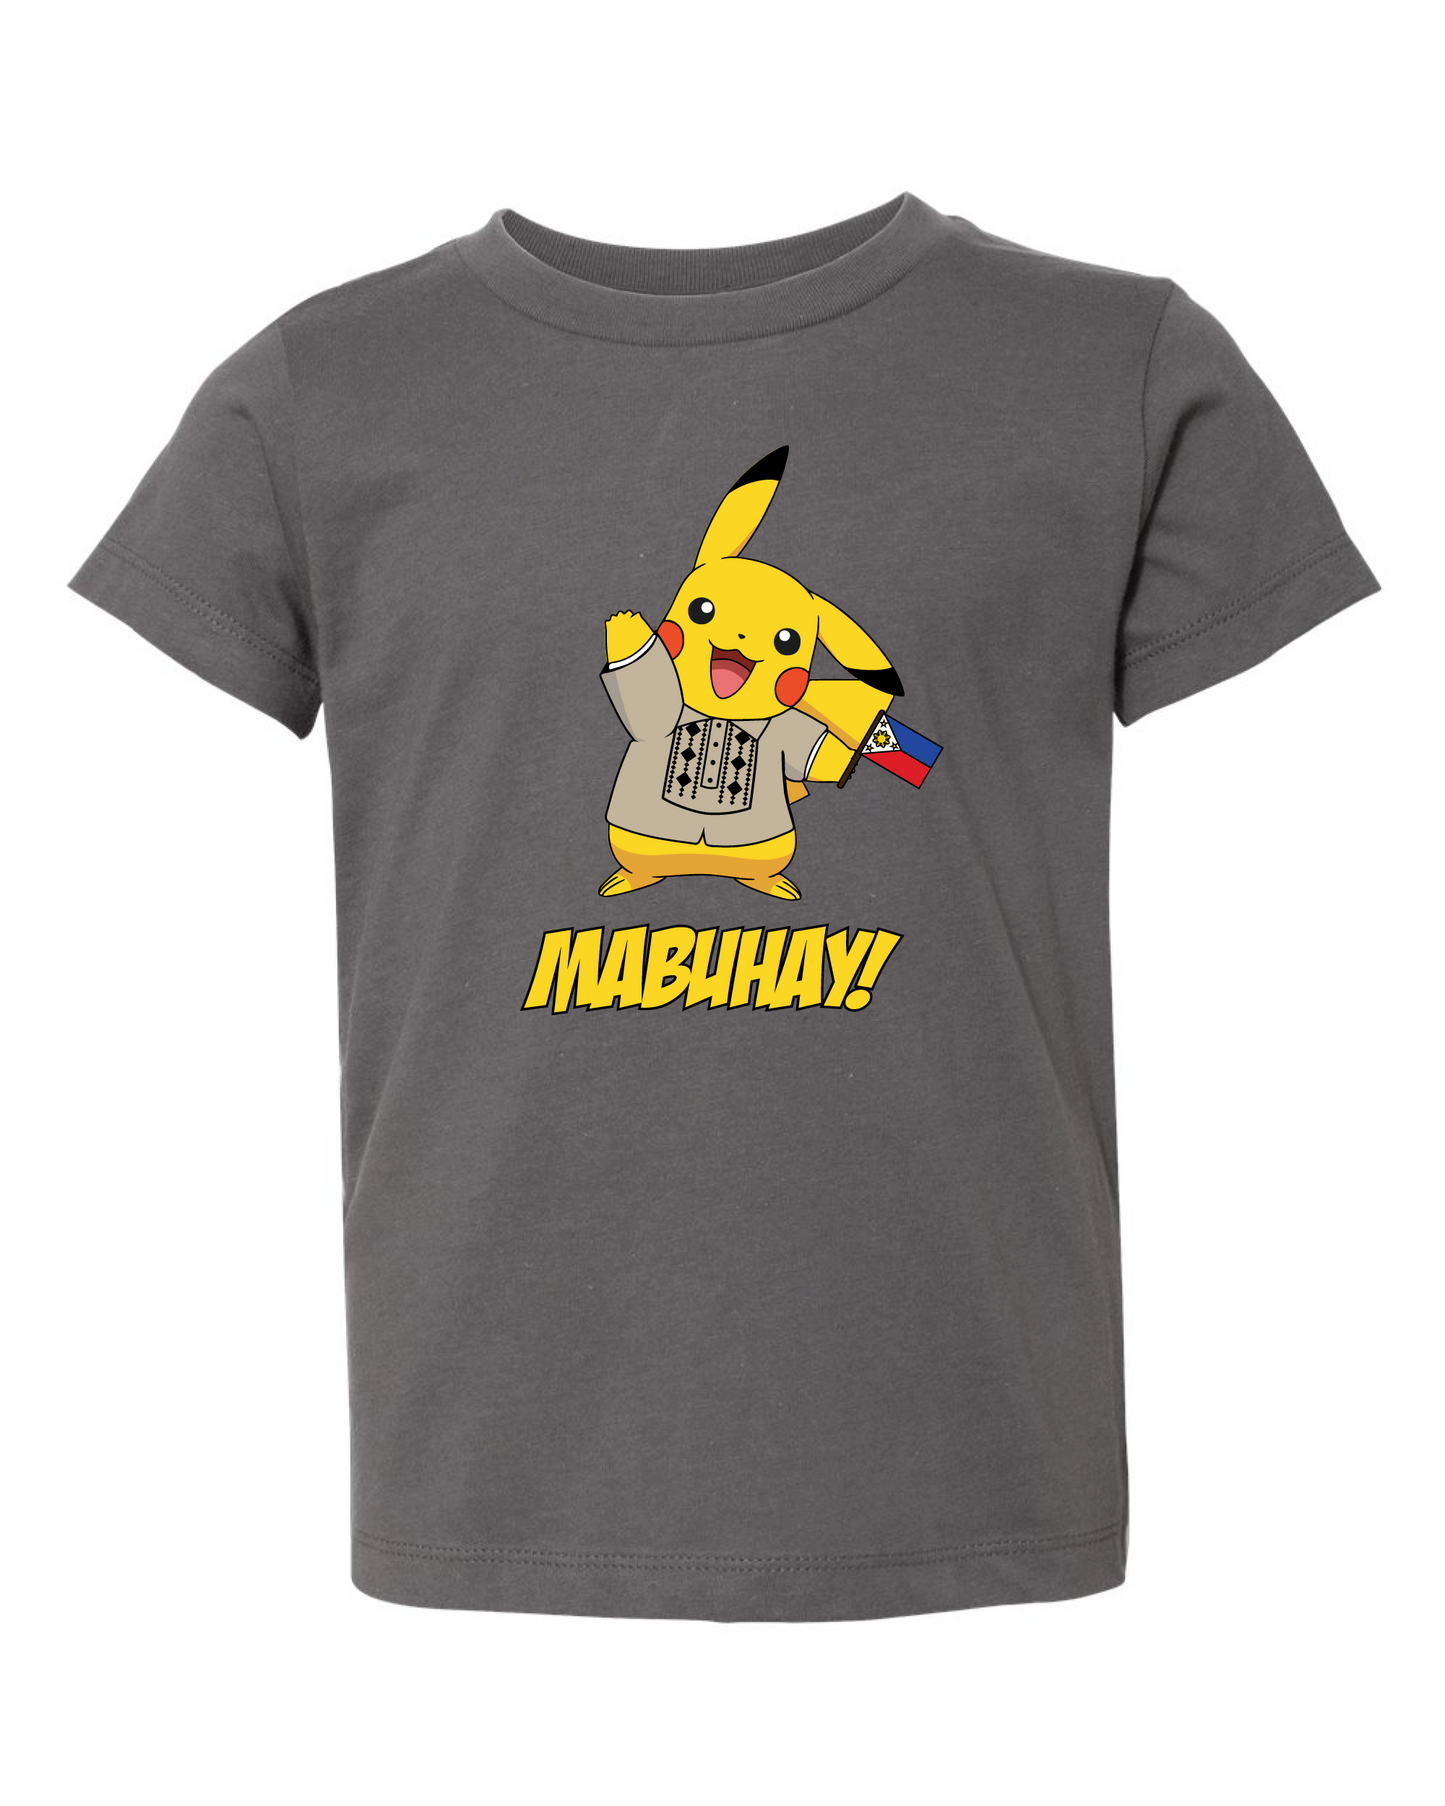 Toddler/Kids Mabuhay Pikachu Shirt